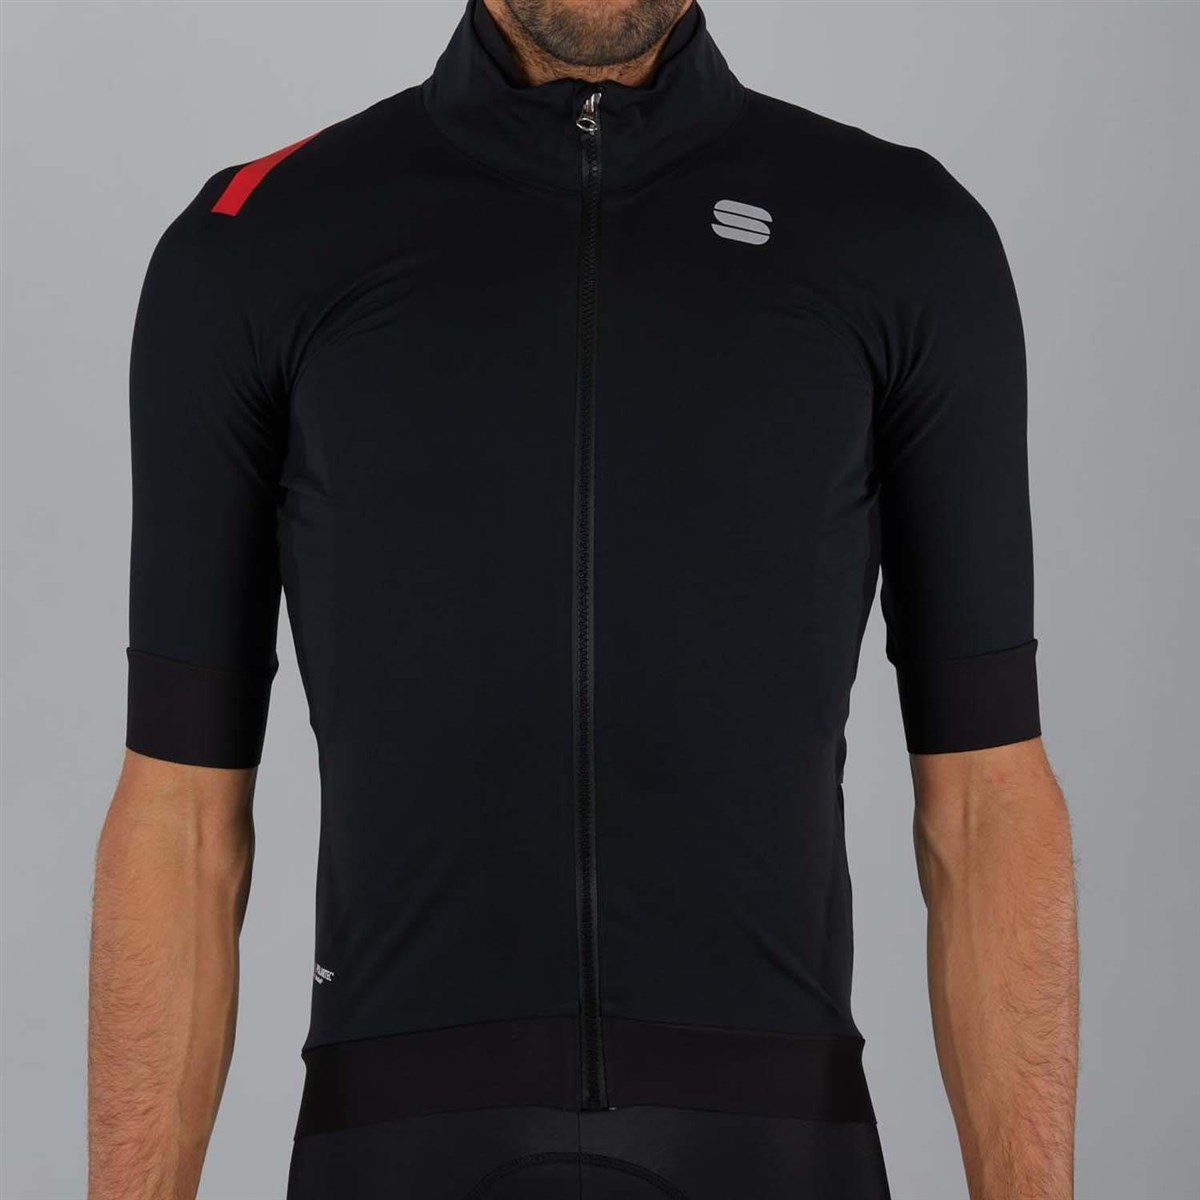 Sportful Fiandre Pro Short Sleeve Cycling Jacket product image